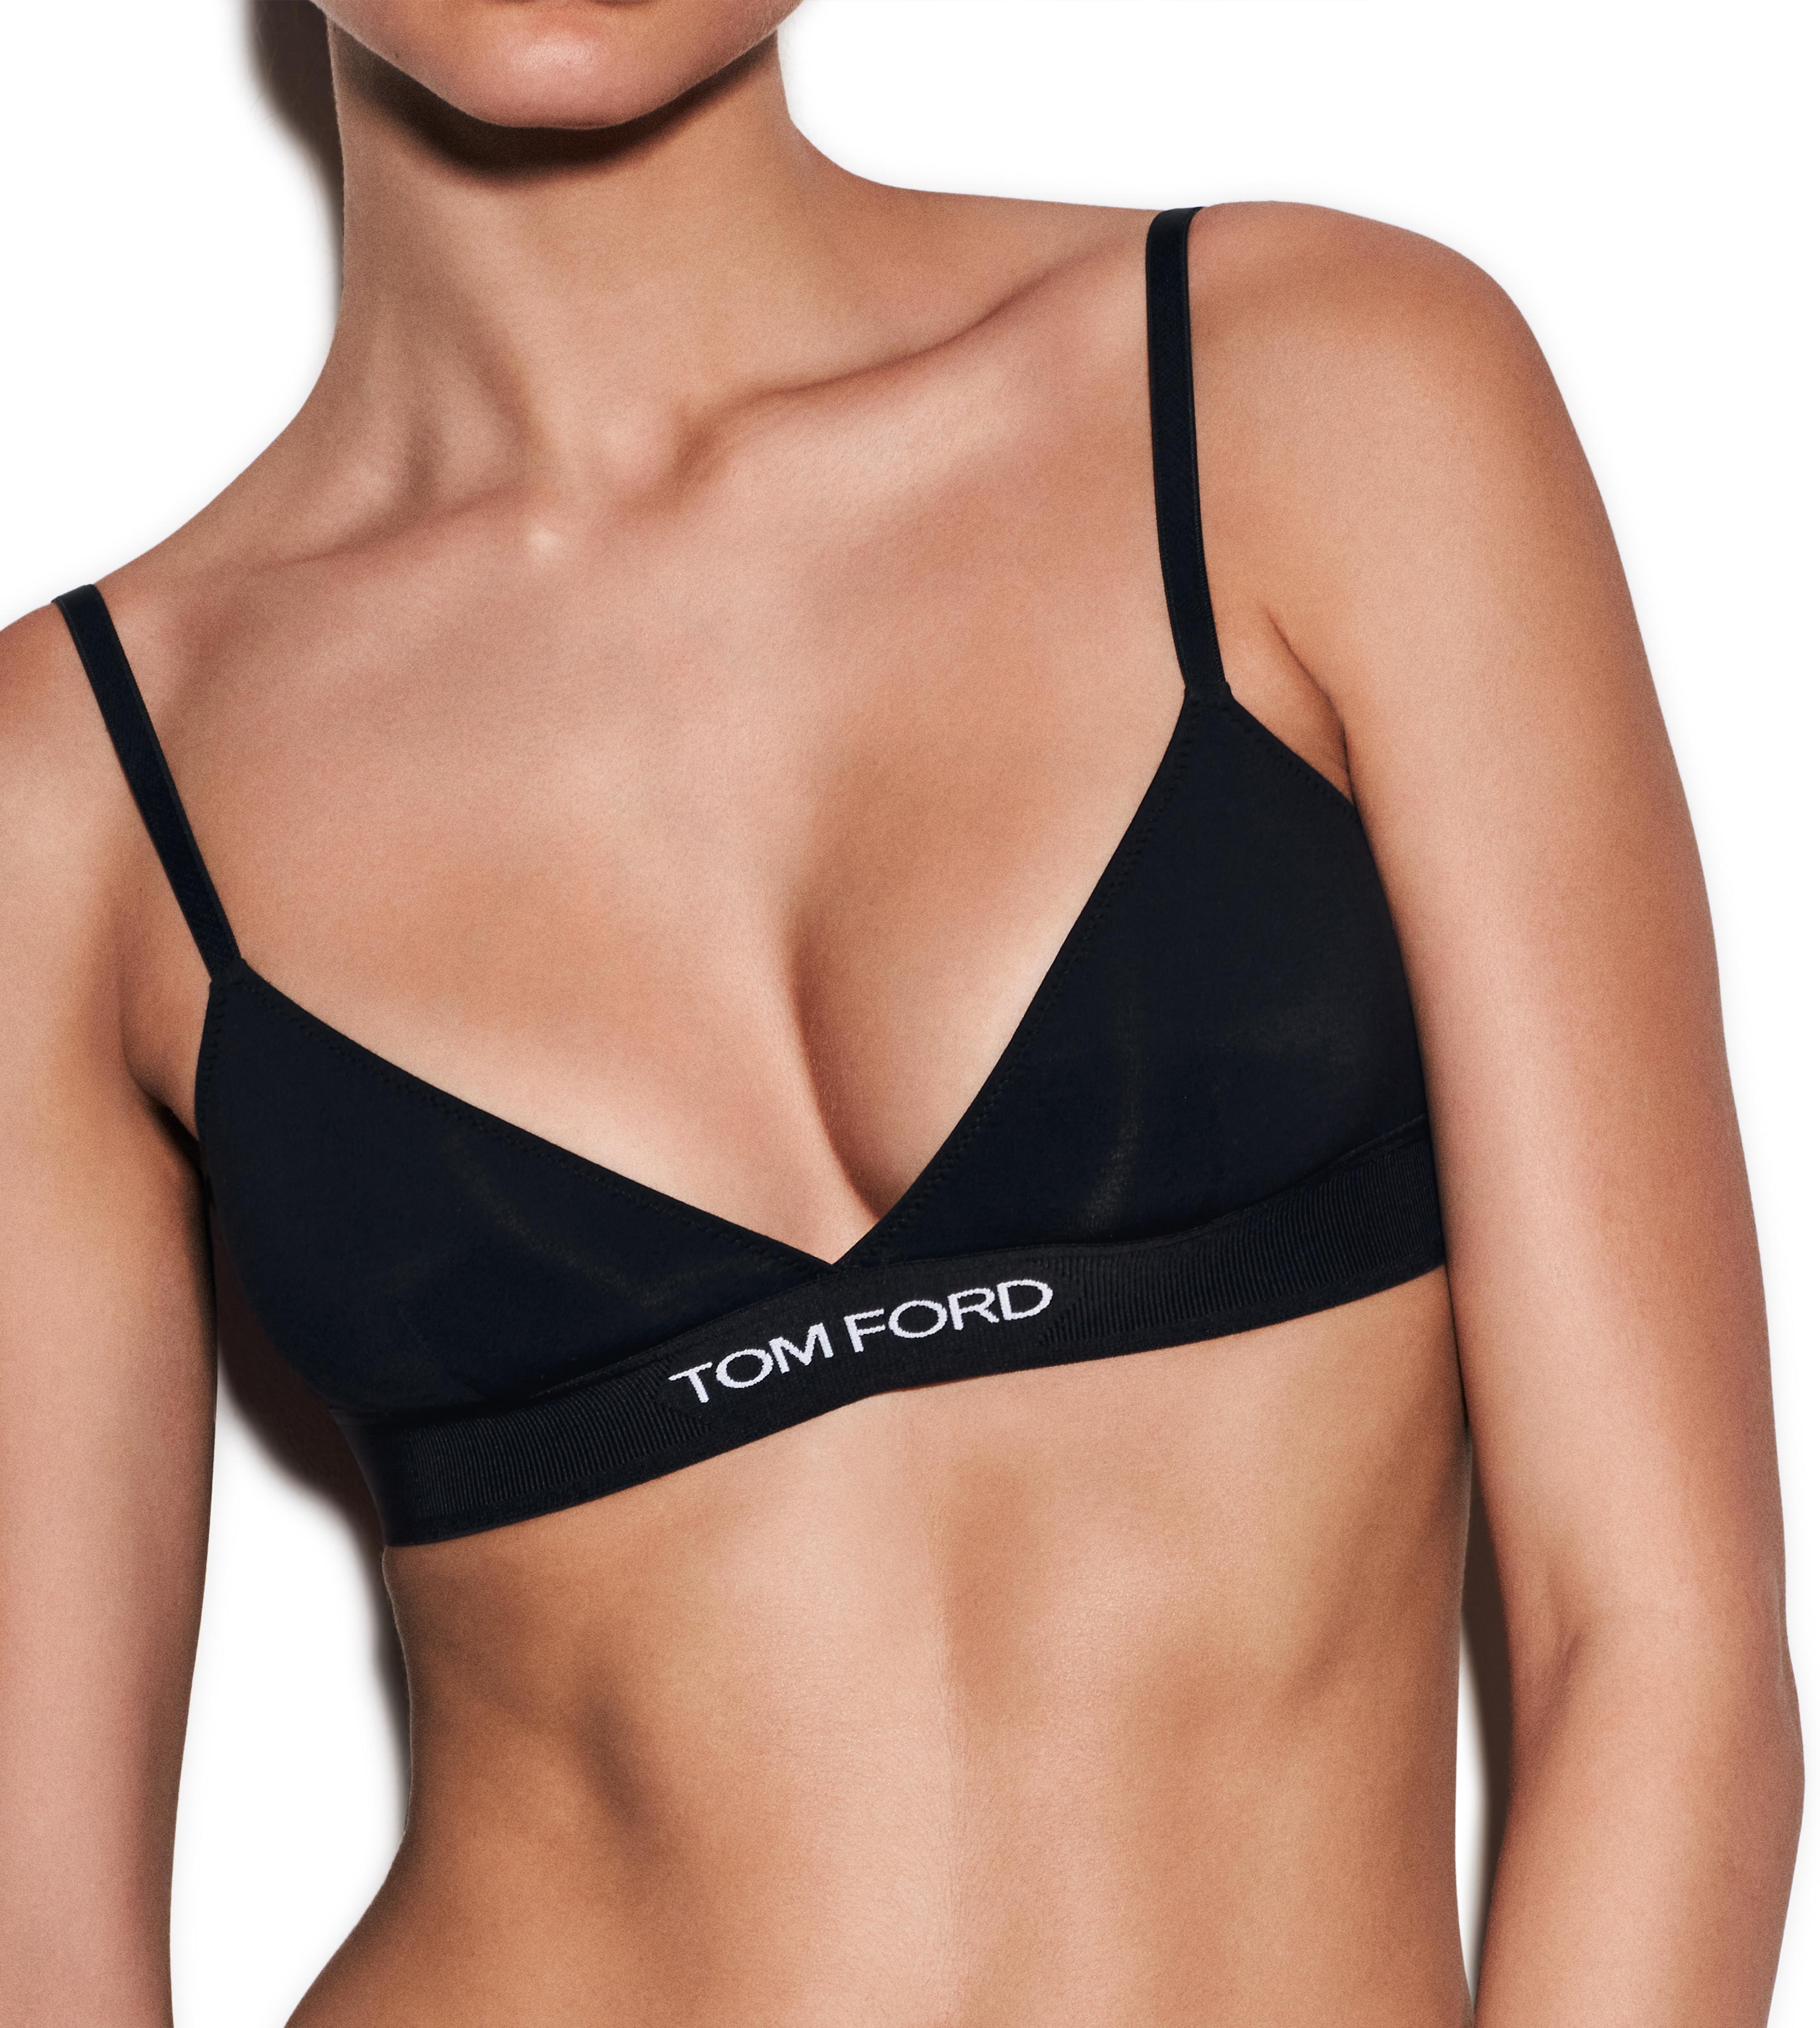 Black Logo-jacquard modal-blend bra, Tom Ford